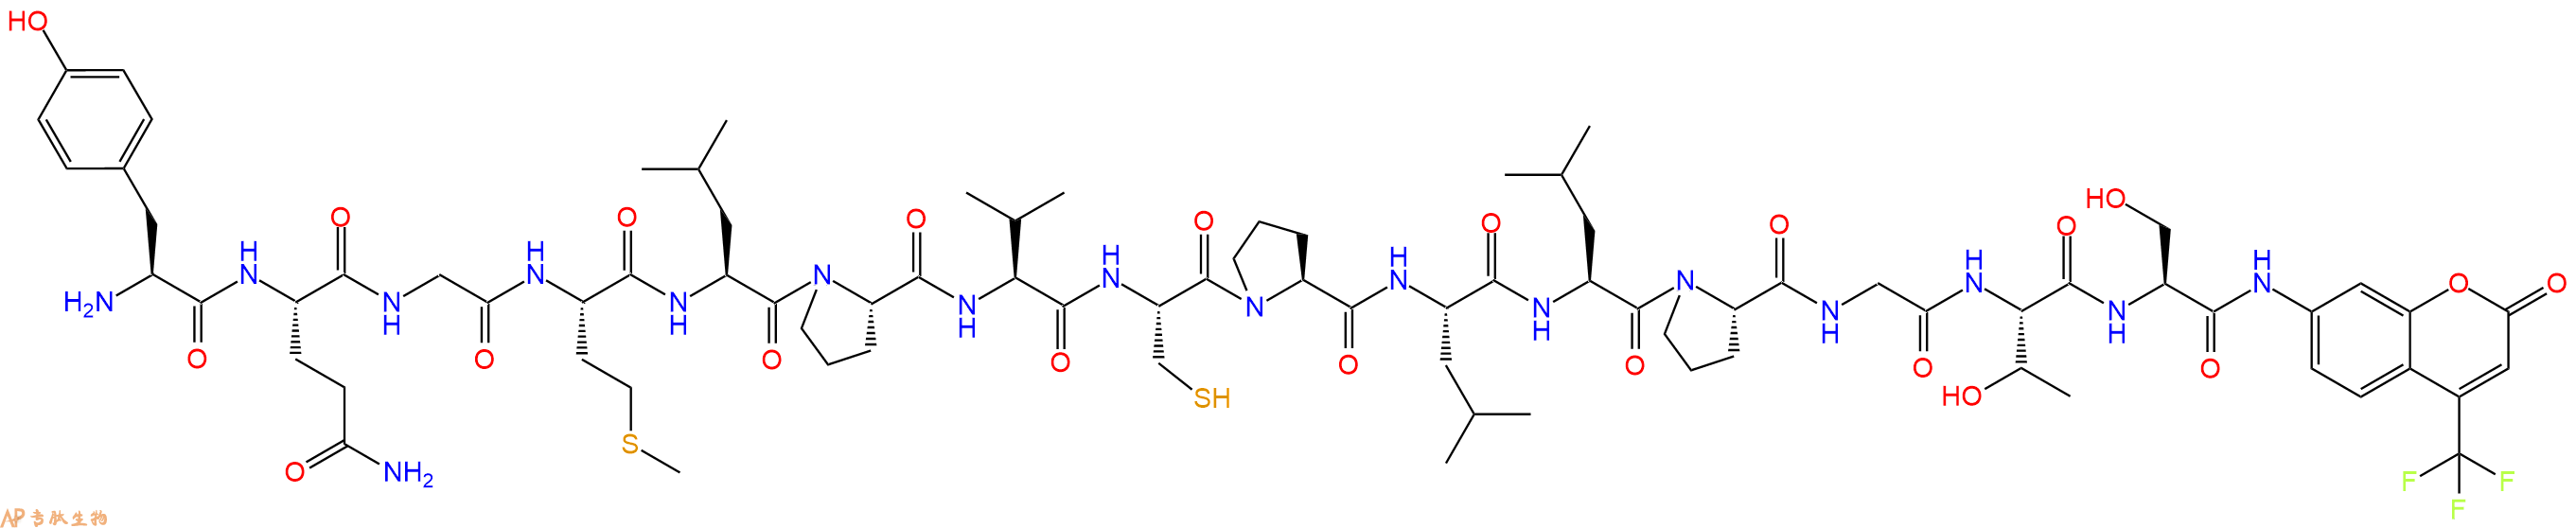 专肽生物产品H2N-Tyr-Gln-Gly-Met-Leu-Pro-Val-Cys-Pro-Leu-Leu-Pr